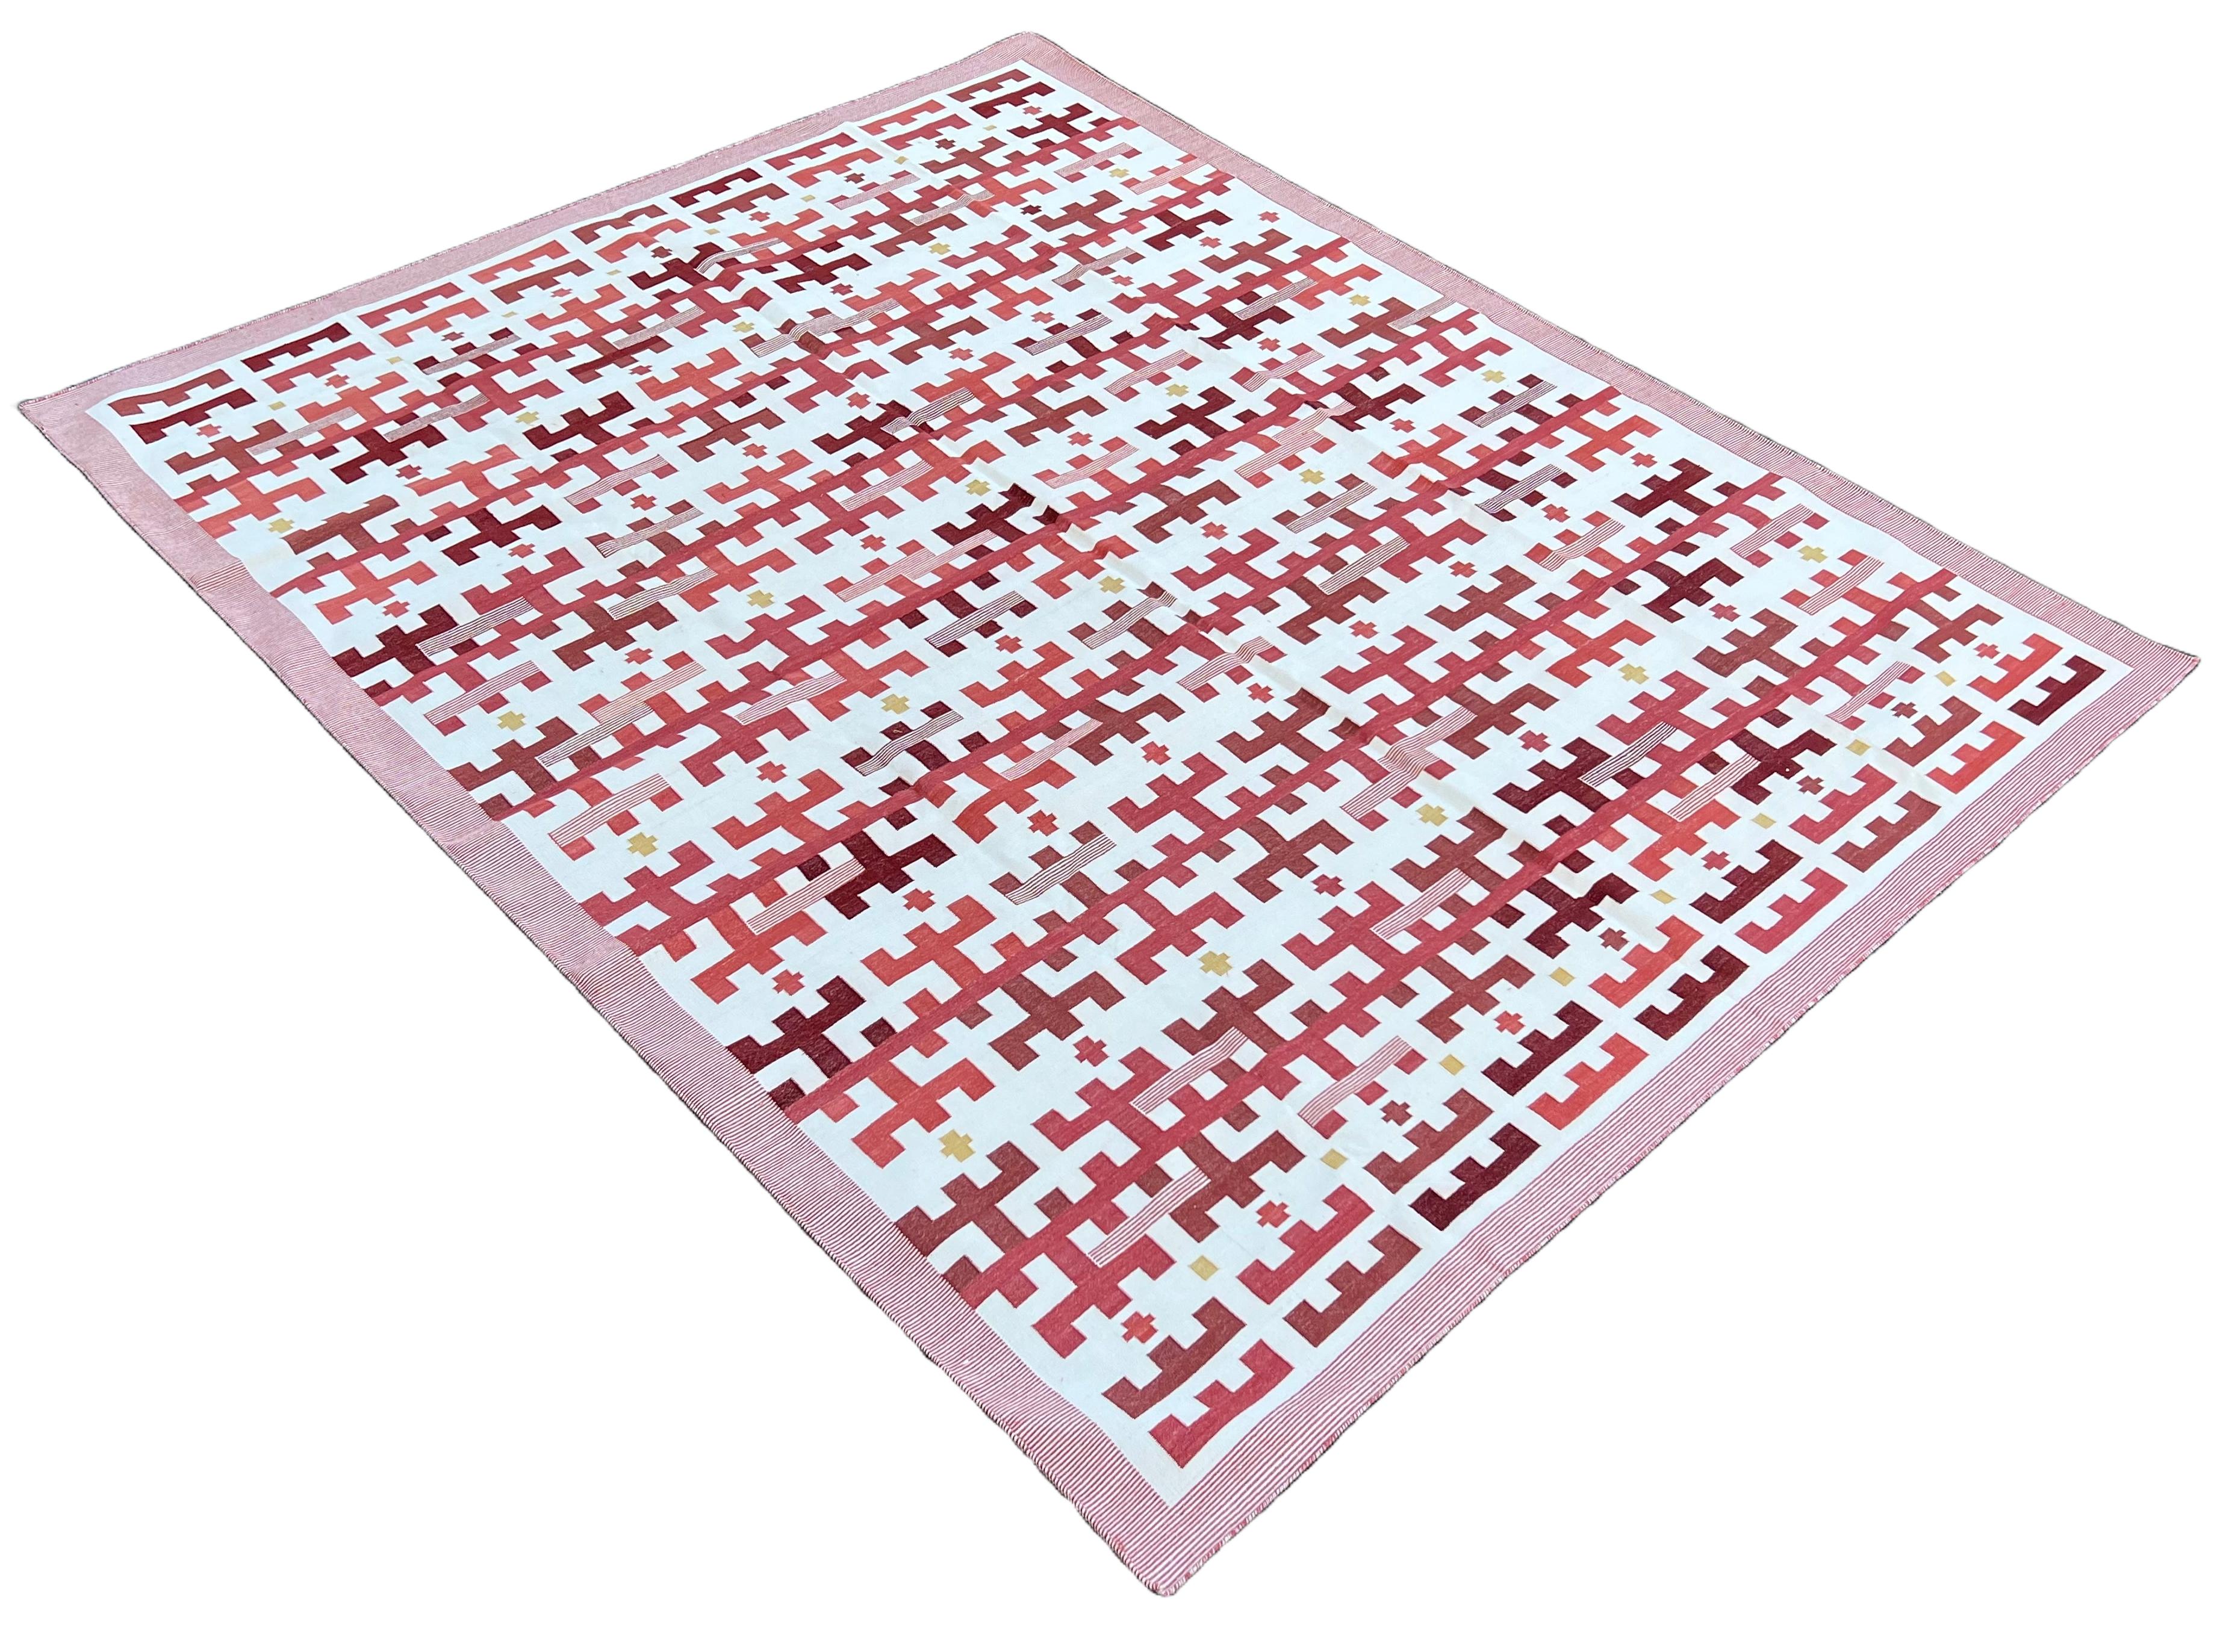 Baumwolle natürlich pflanzlich gefärbt, rot & weiß Marianne Indian Striped Dhurrie-8'x10'
Diese speziellen flachgewebten Dhurries werden aus 15-fachem Garn aus 100% Baumwolle handgewebt. Aufgrund der speziellen Fertigungstechniken, die zur